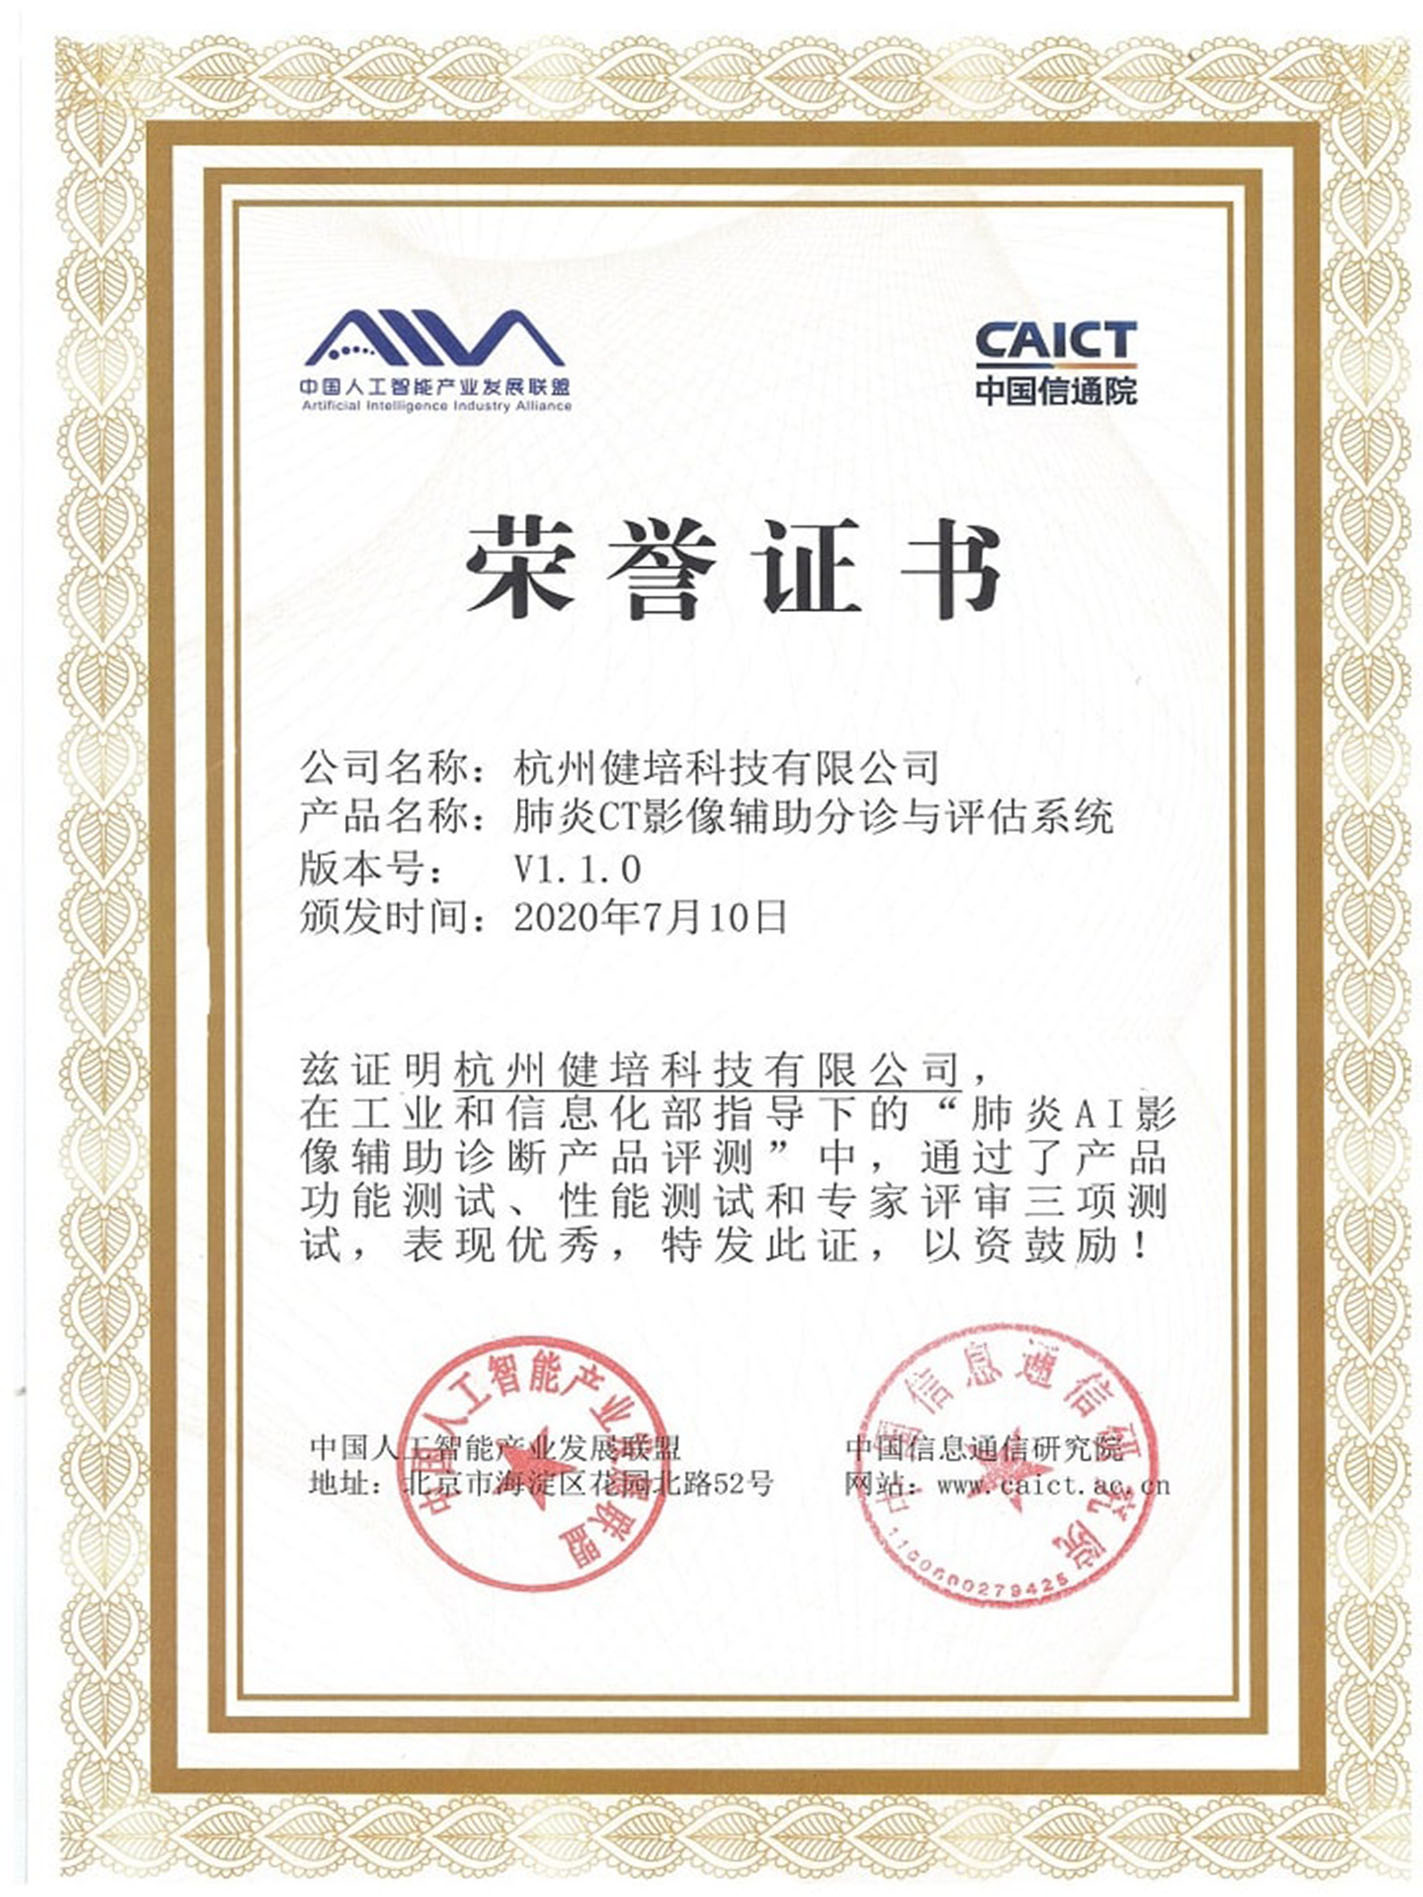 中国信通院和人工智能联盟新冠产品测试荣誉